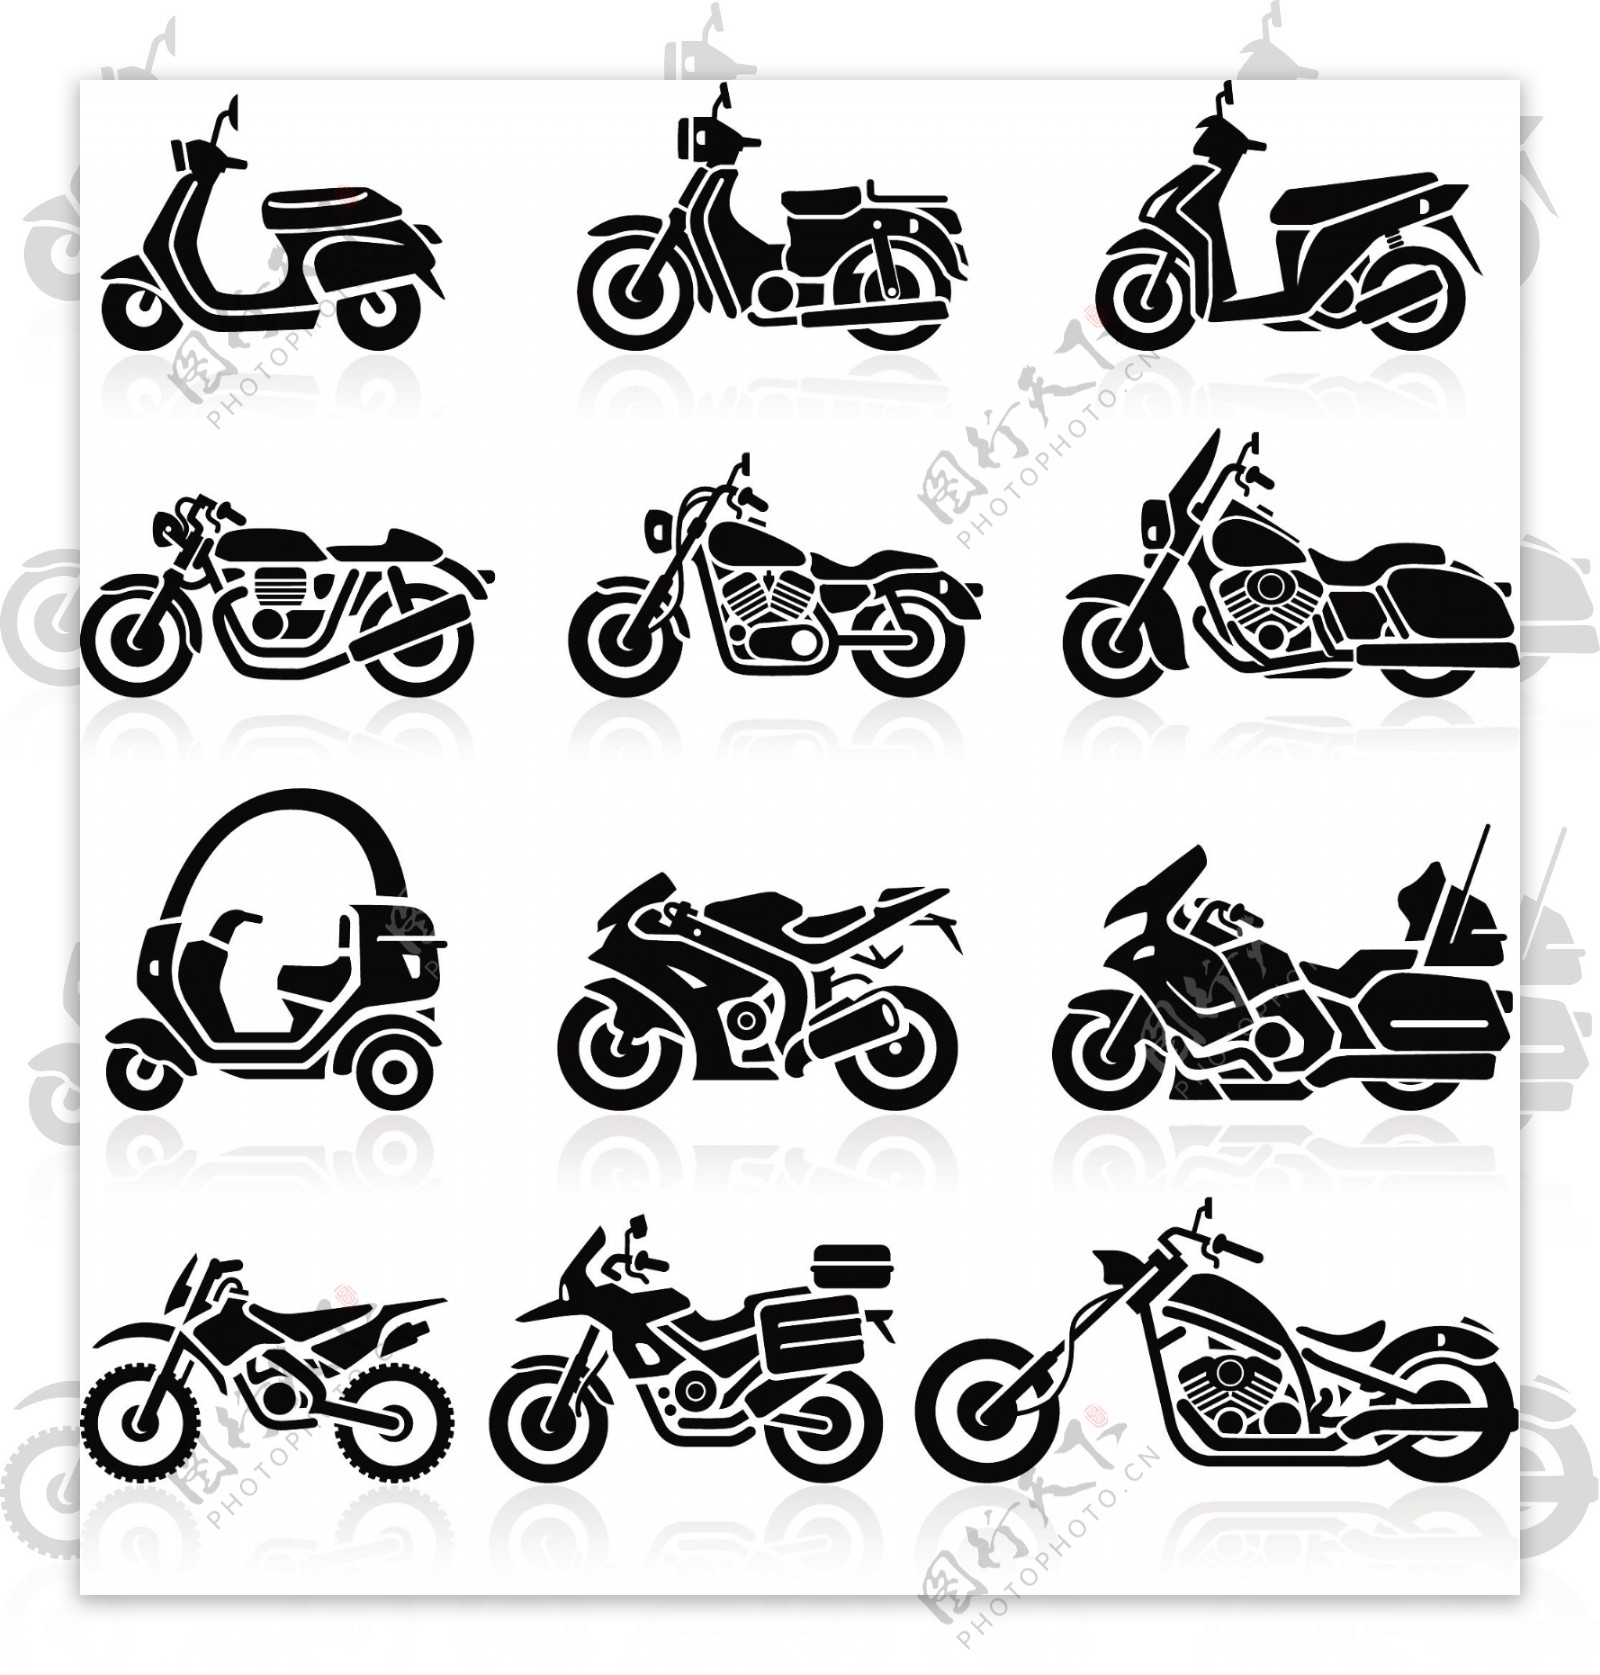 不同的摩托车剪影矢量图像